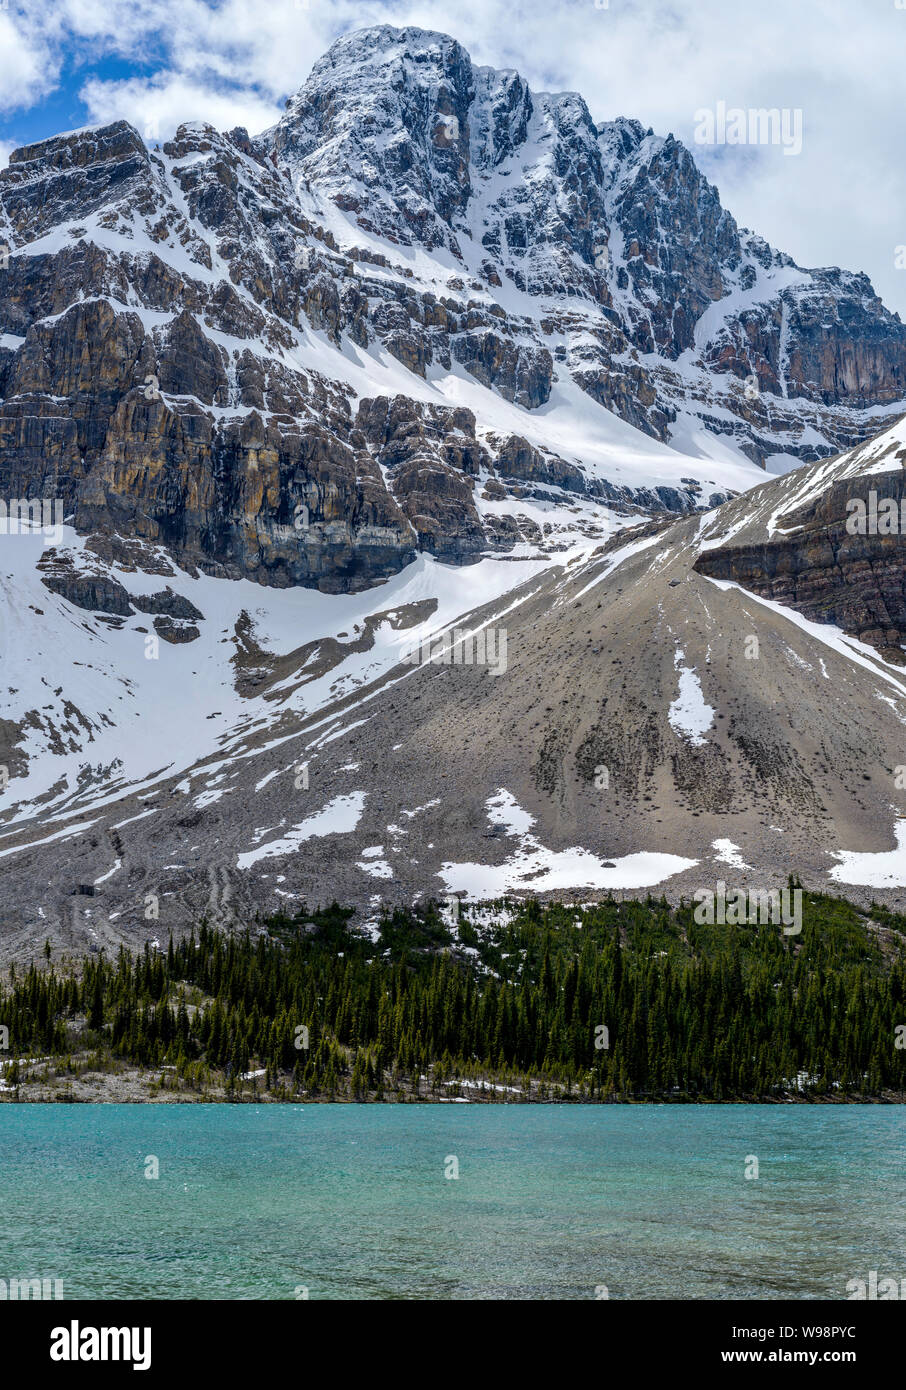 Montagna Crowfoot - verticale - una molla vista della coperta di neve montagna Crowfoot imponente sulla riva del lago di prua, il Parco Nazionale di Banff, Alberta, Canada. Foto Stock